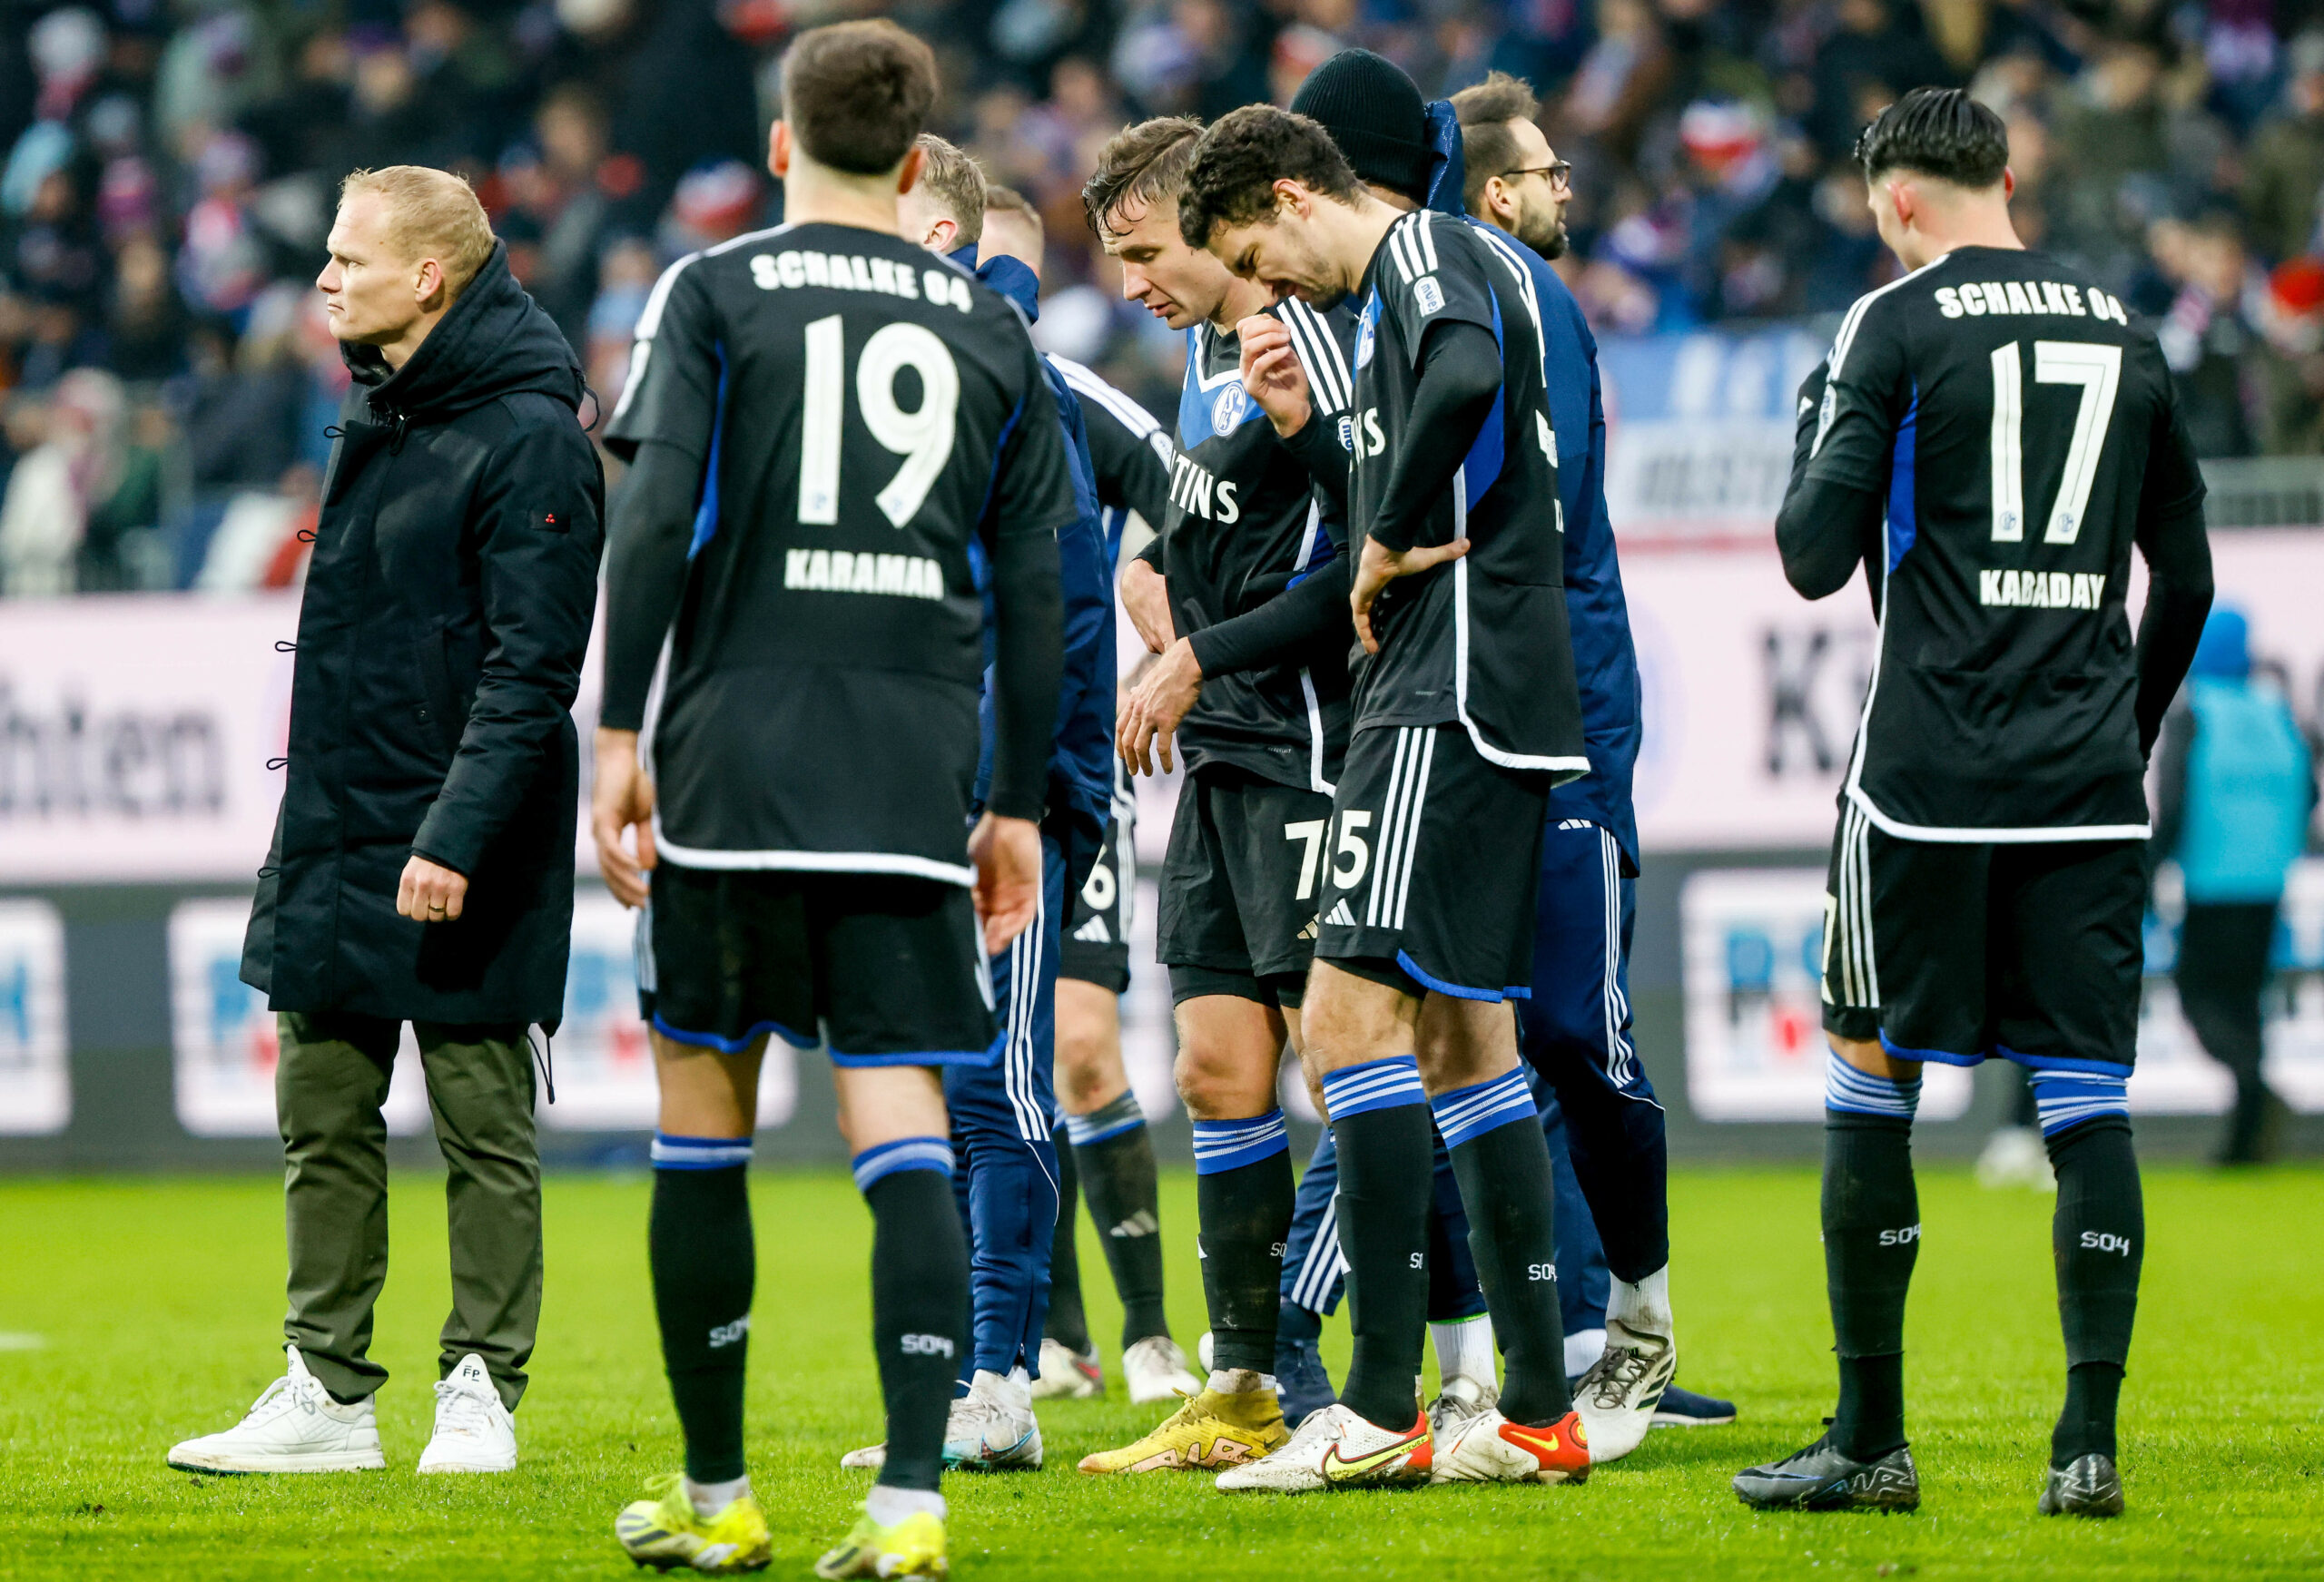 Spieler von Schalke 04 stehen nach einer Niederlage enttäuscht auf dem Spielfeld.